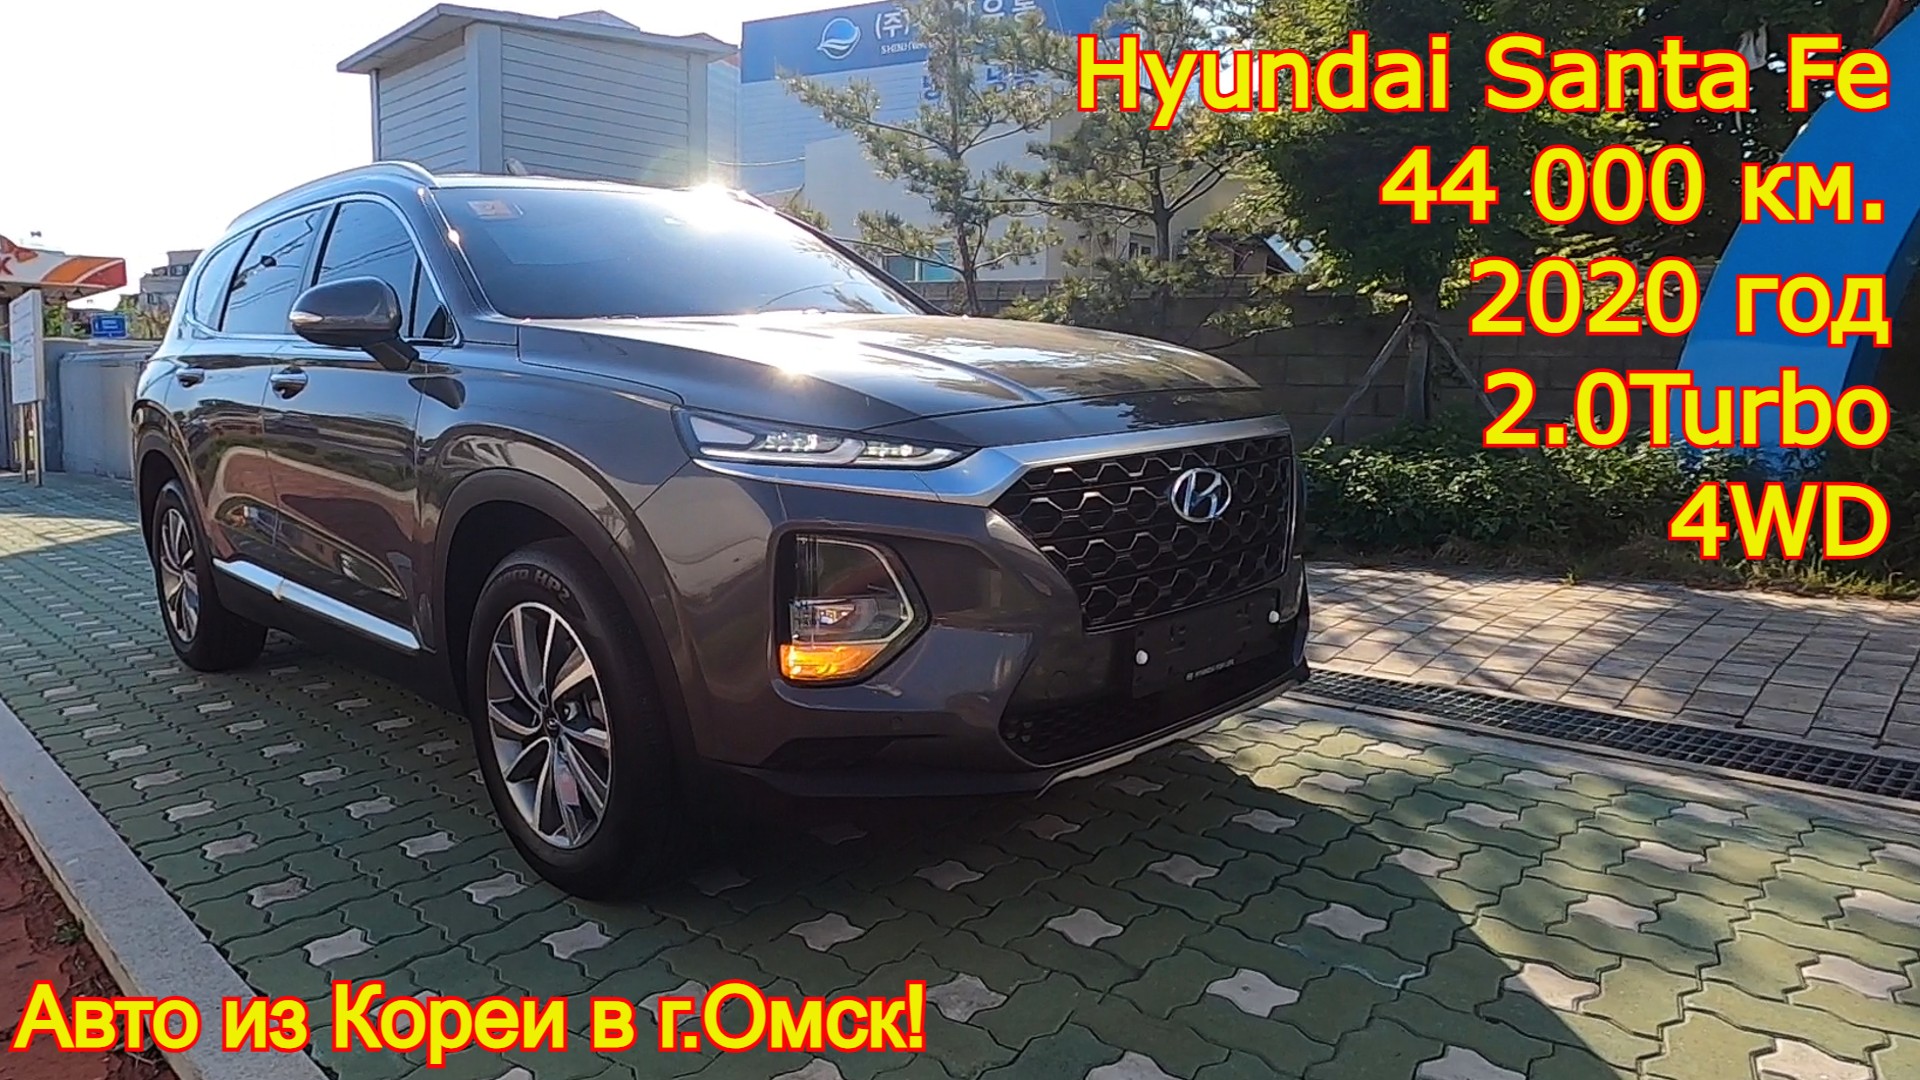 Авто из Кореи в г.Омск - Hyundai Santa Fe, 2020 год, 44 000 км., 4WD, 2.0 Turbo!